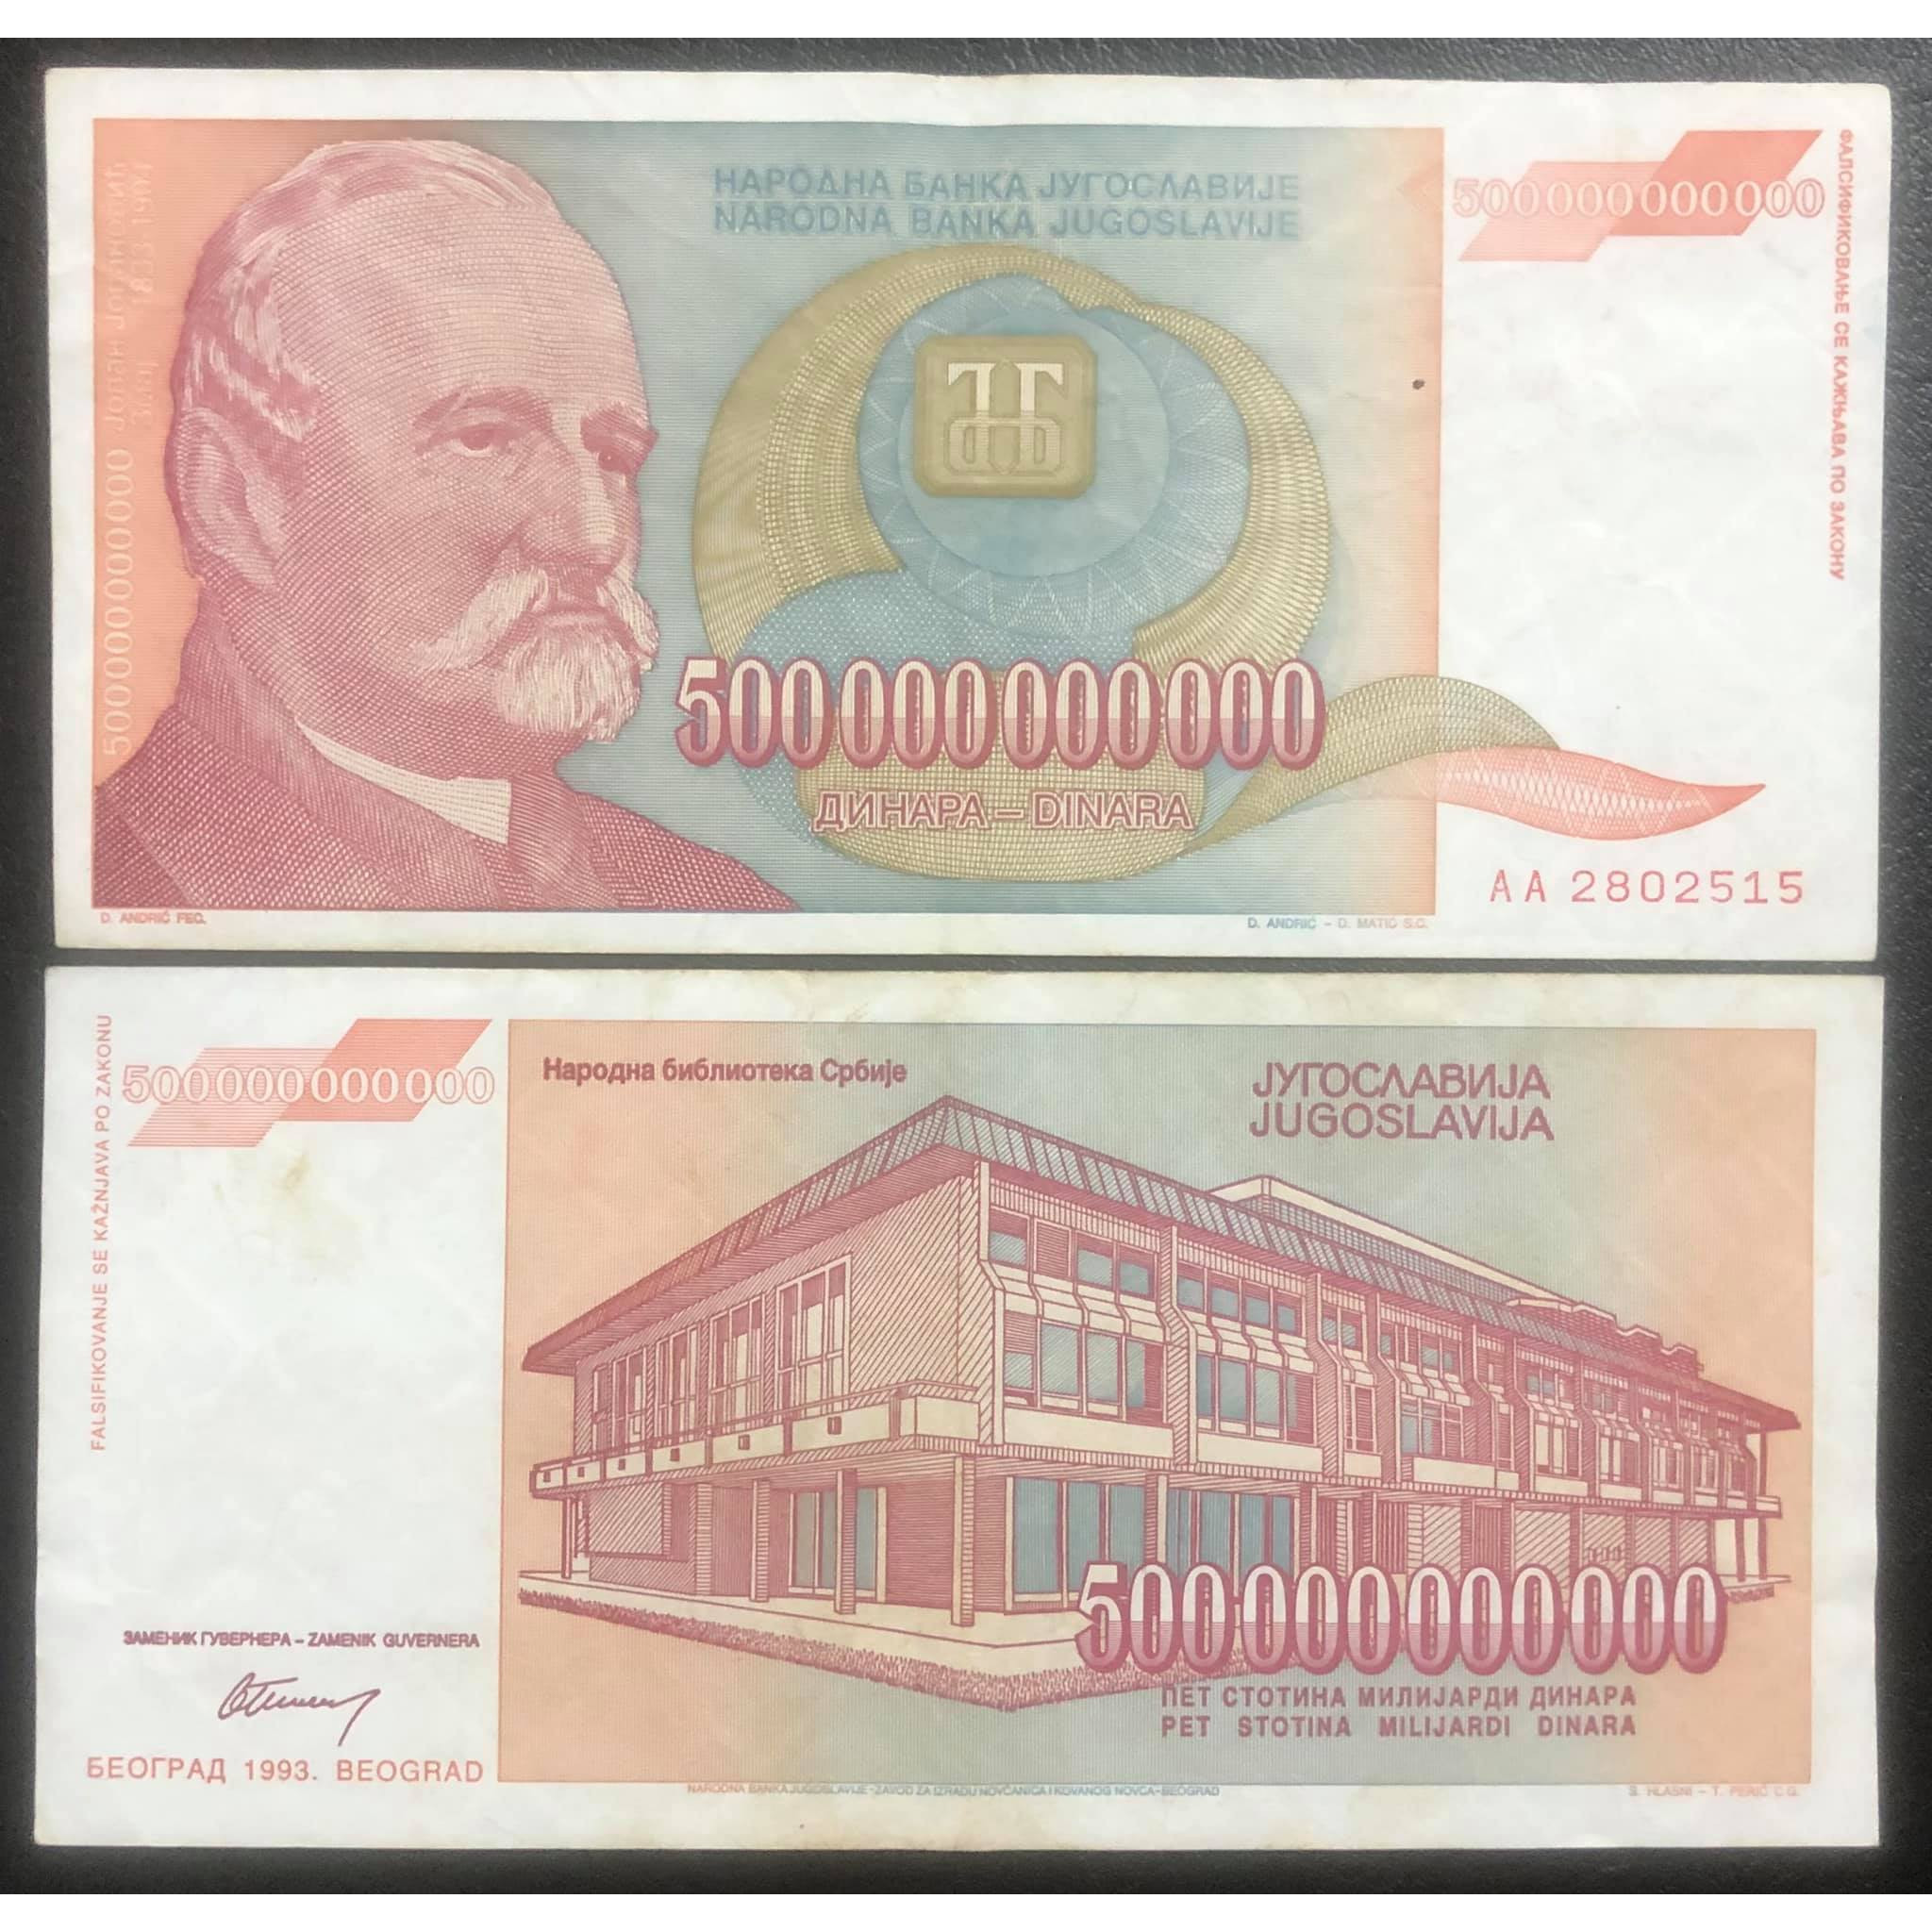 Tờ tiền 500 tỷ Nam Tư mệnh giá lạm phát lớn nhất, quốc gia không còn tồn tại